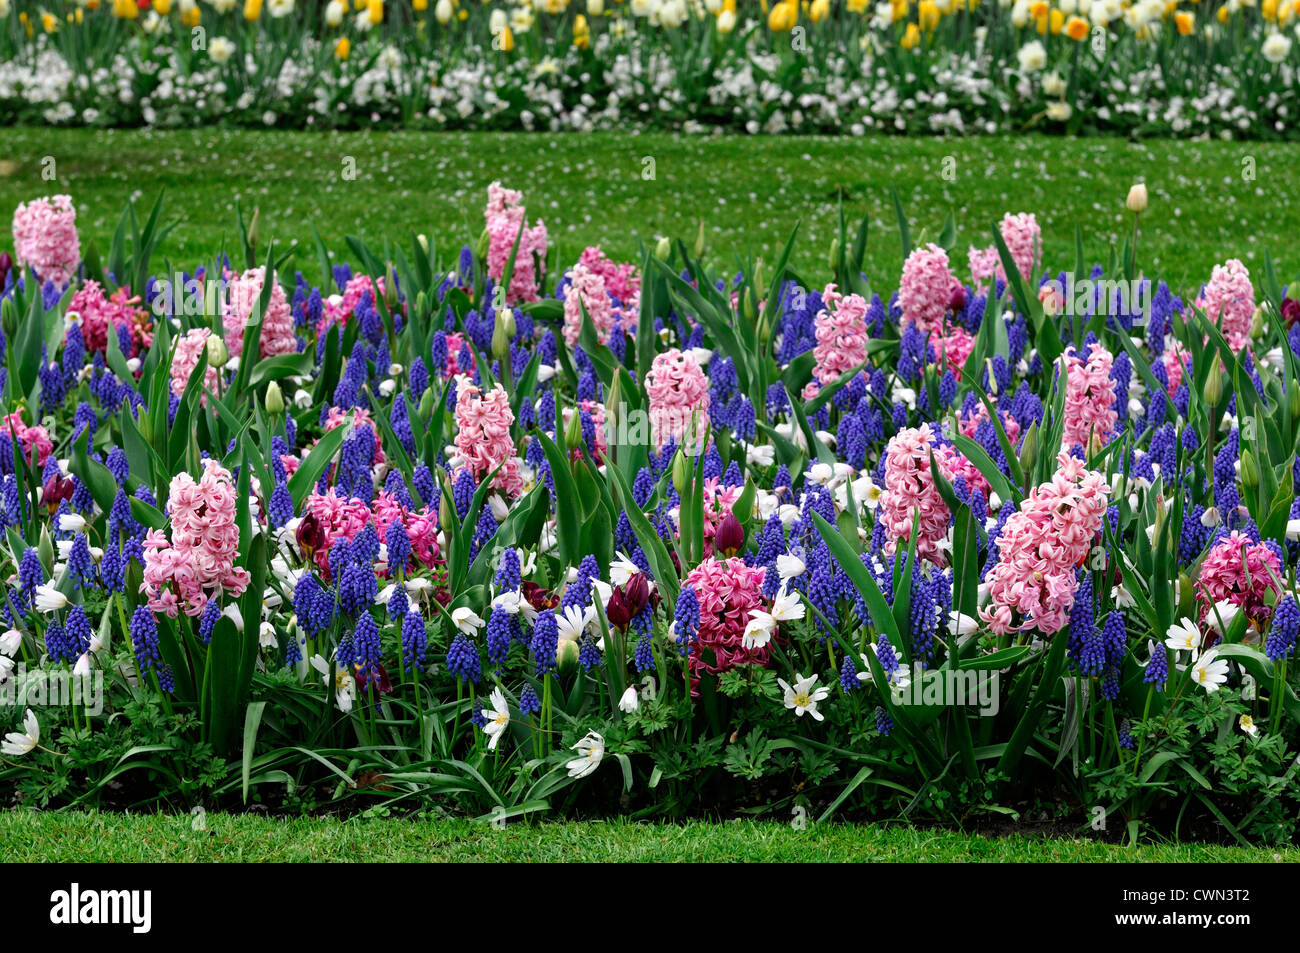 Mischbett Grenze Frühling blühenden Blumenzwiebeln lila weiß rosa Farbe Combo Farbkombination mischen gemischte Pflanzung Display Systems Stockfoto